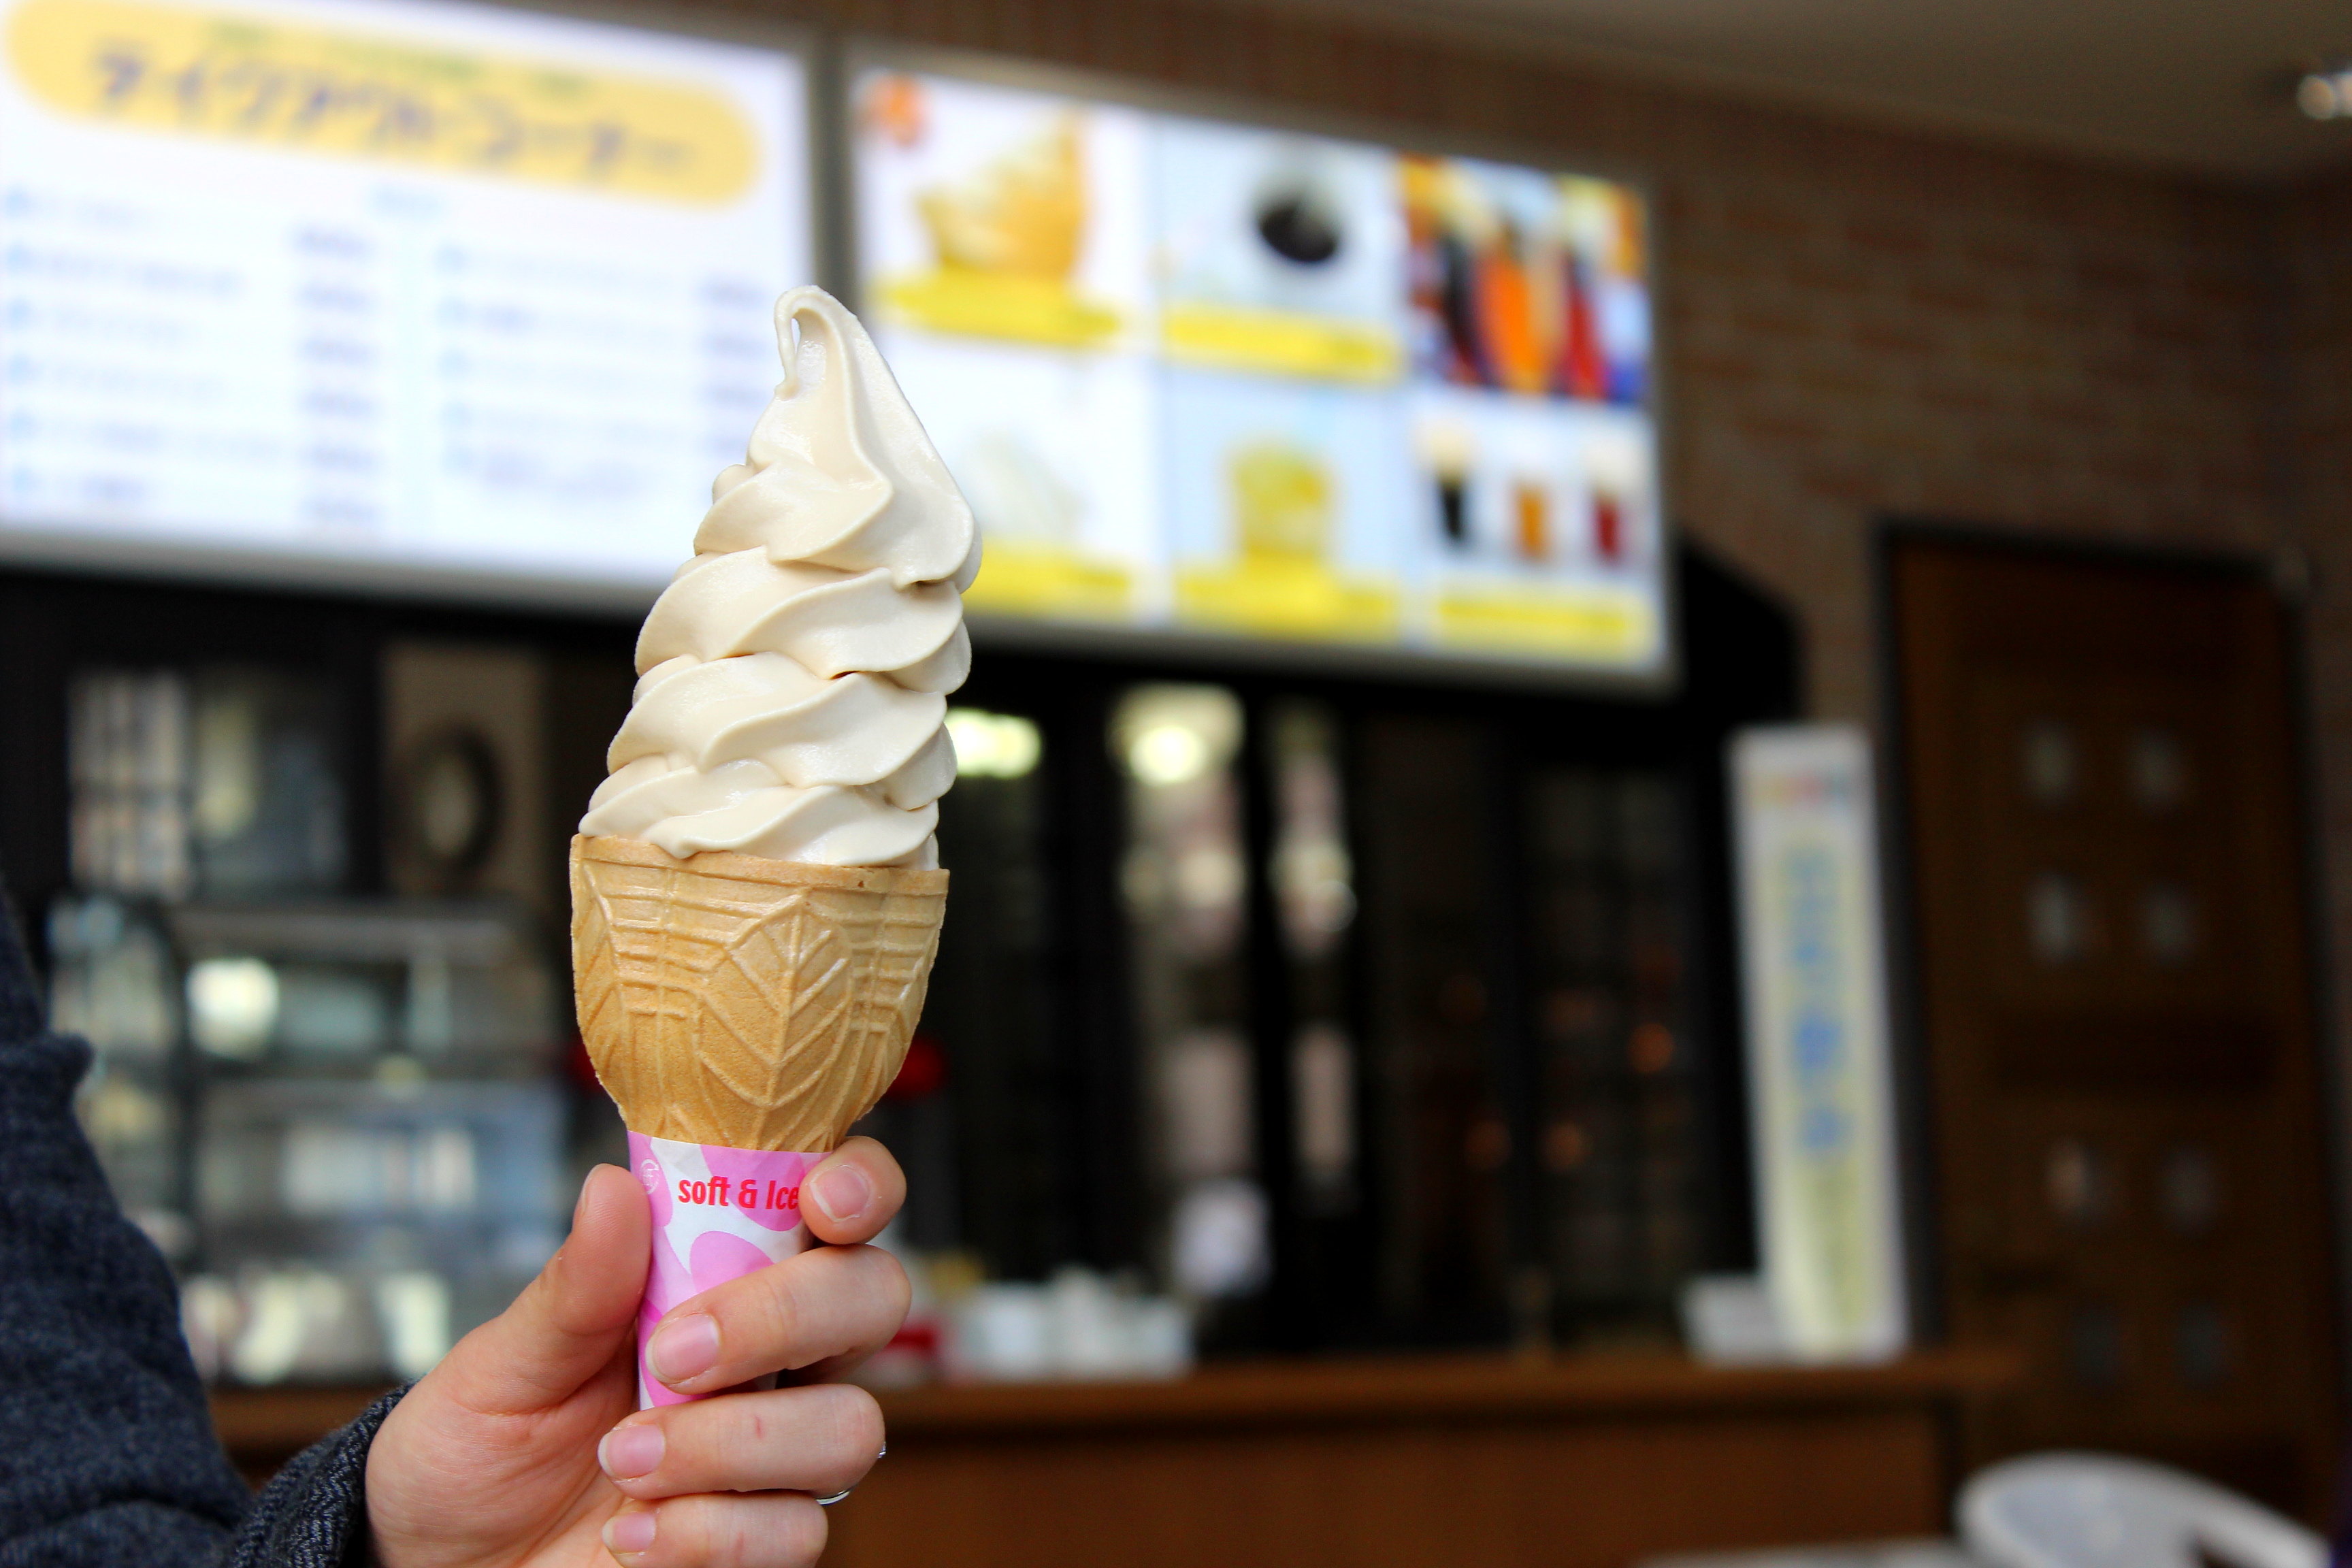 富山のご当地ソフトクリームまとめ おいしいおすすめ11選食べてみた 富山の遊び場